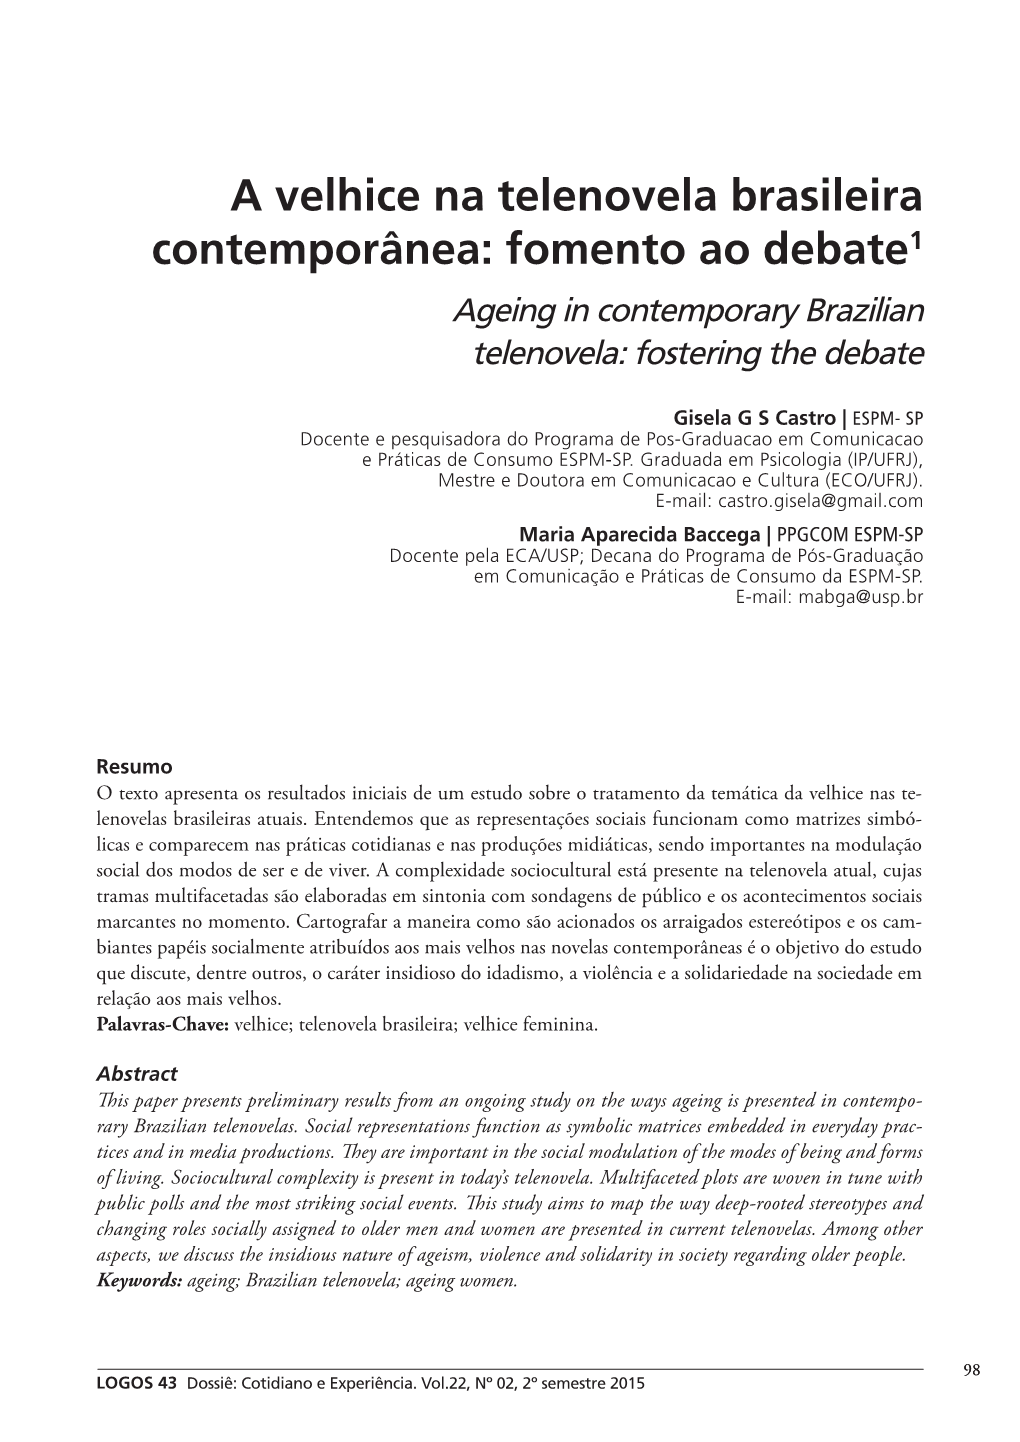 A Velhice Na Telenovela Brasileira Contemporânea: Fomento Ao Debate1 Ageing in Contemporary Brazilian Telenovela: Fostering the Debate